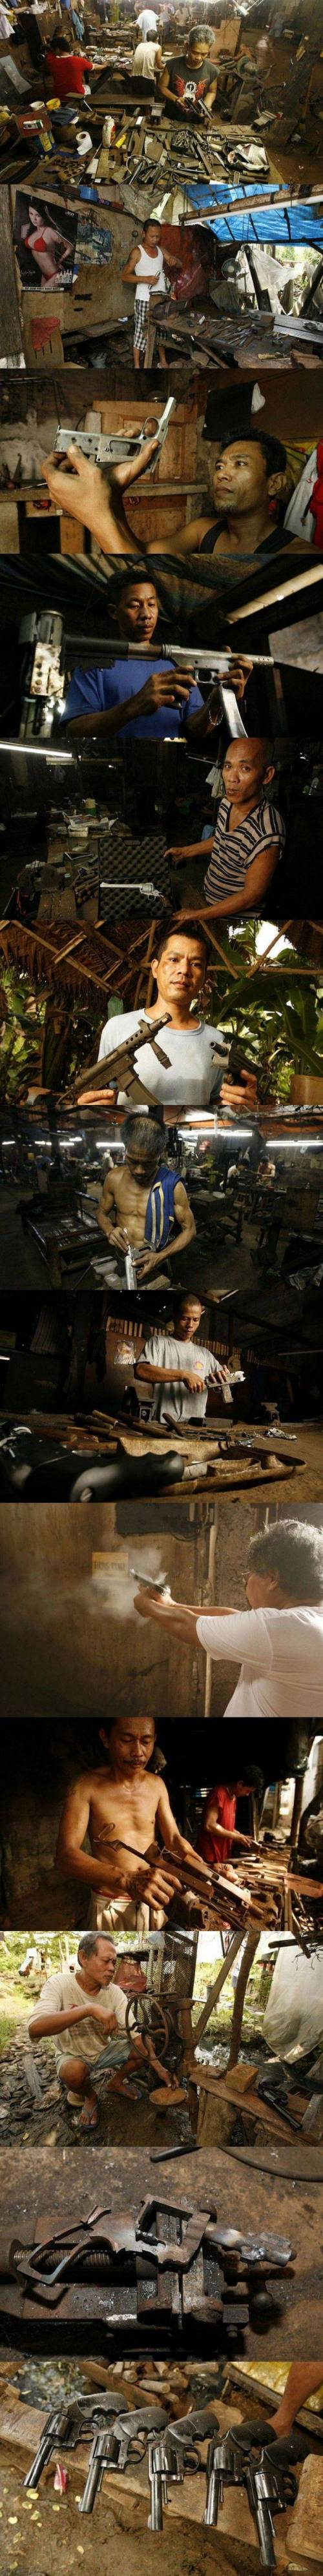 필리핀 사제 총기 공장.jpg